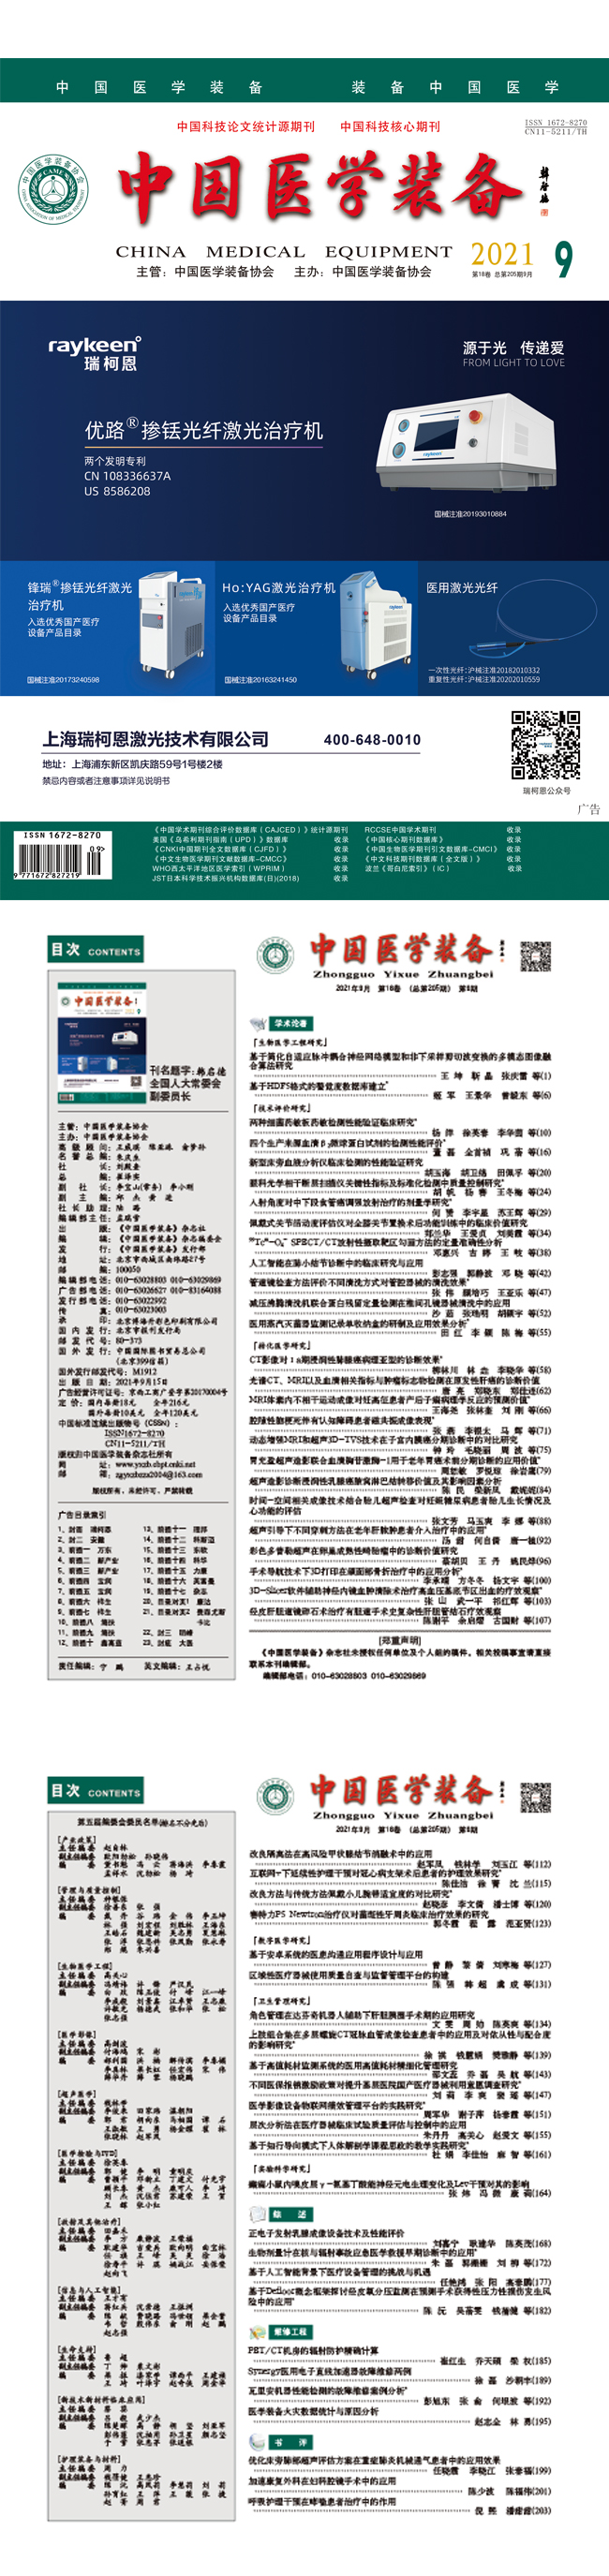 《中国医学装备》2021年9期出版(图1)